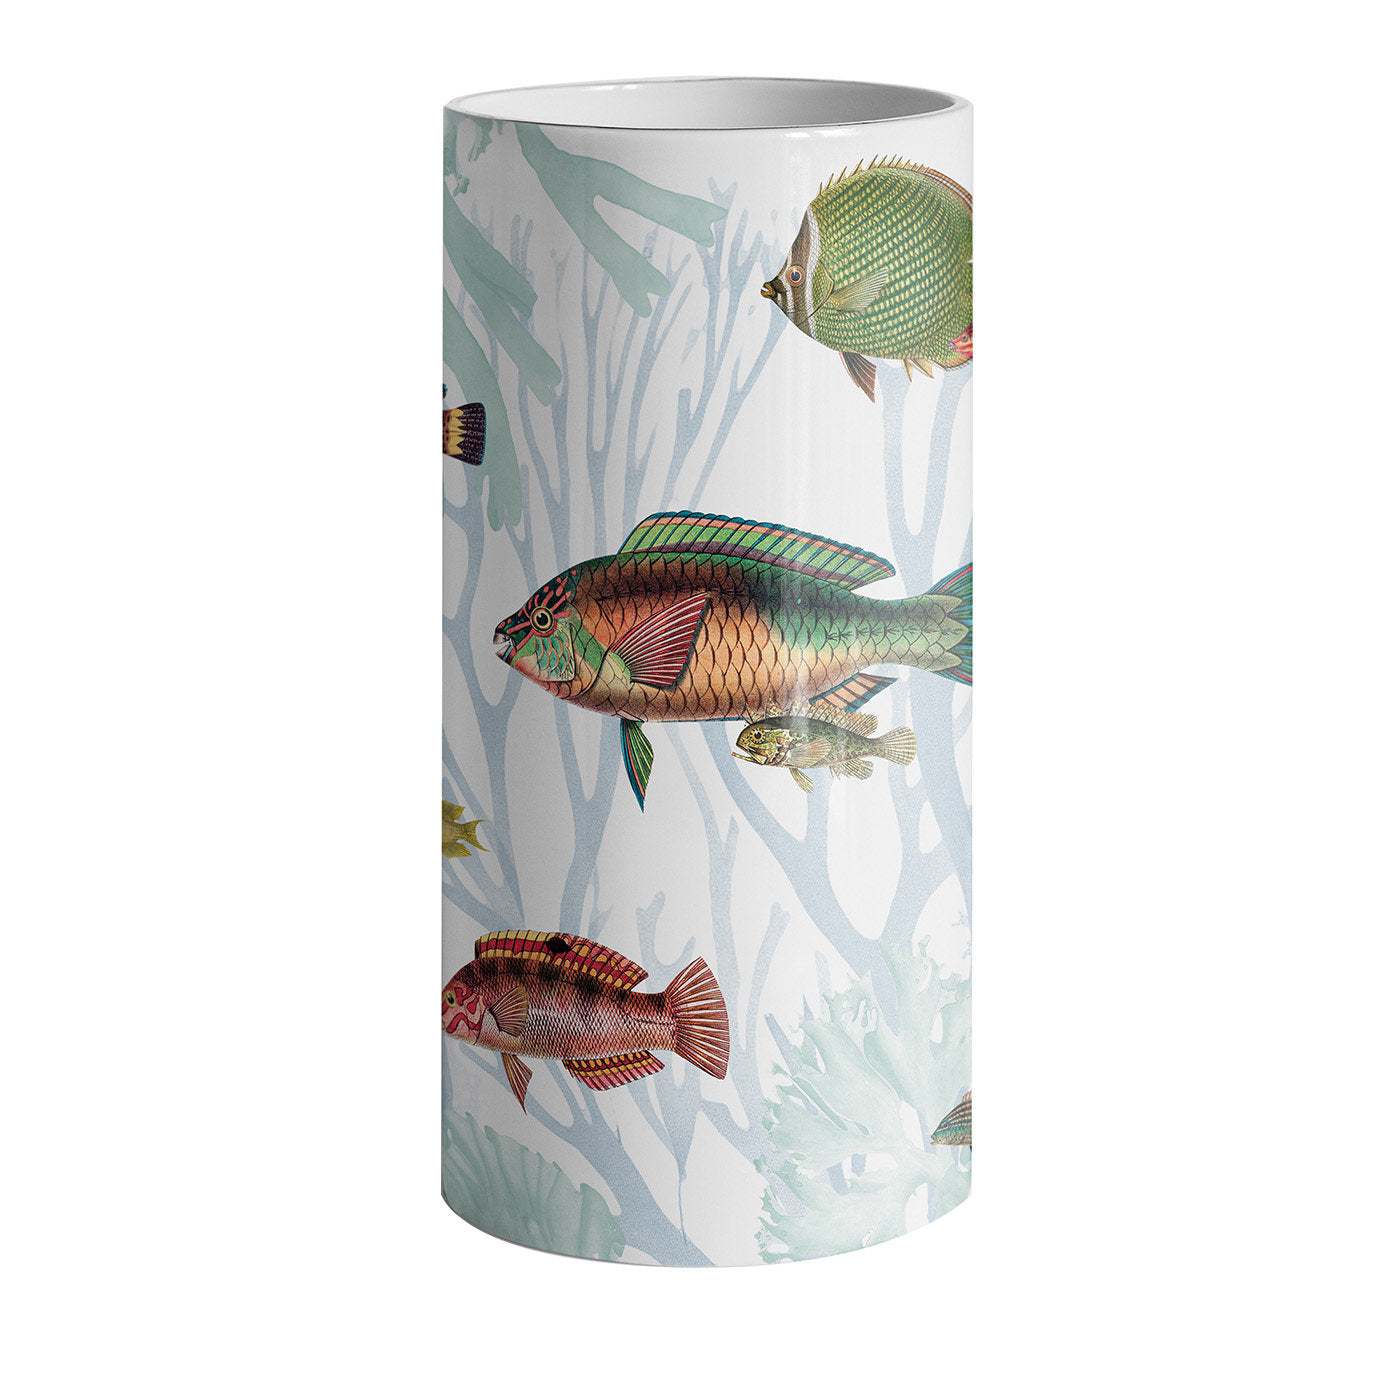 Amami Porzellan Zylindrische Vase mit tropischen Fischen #2 - Hauptansicht